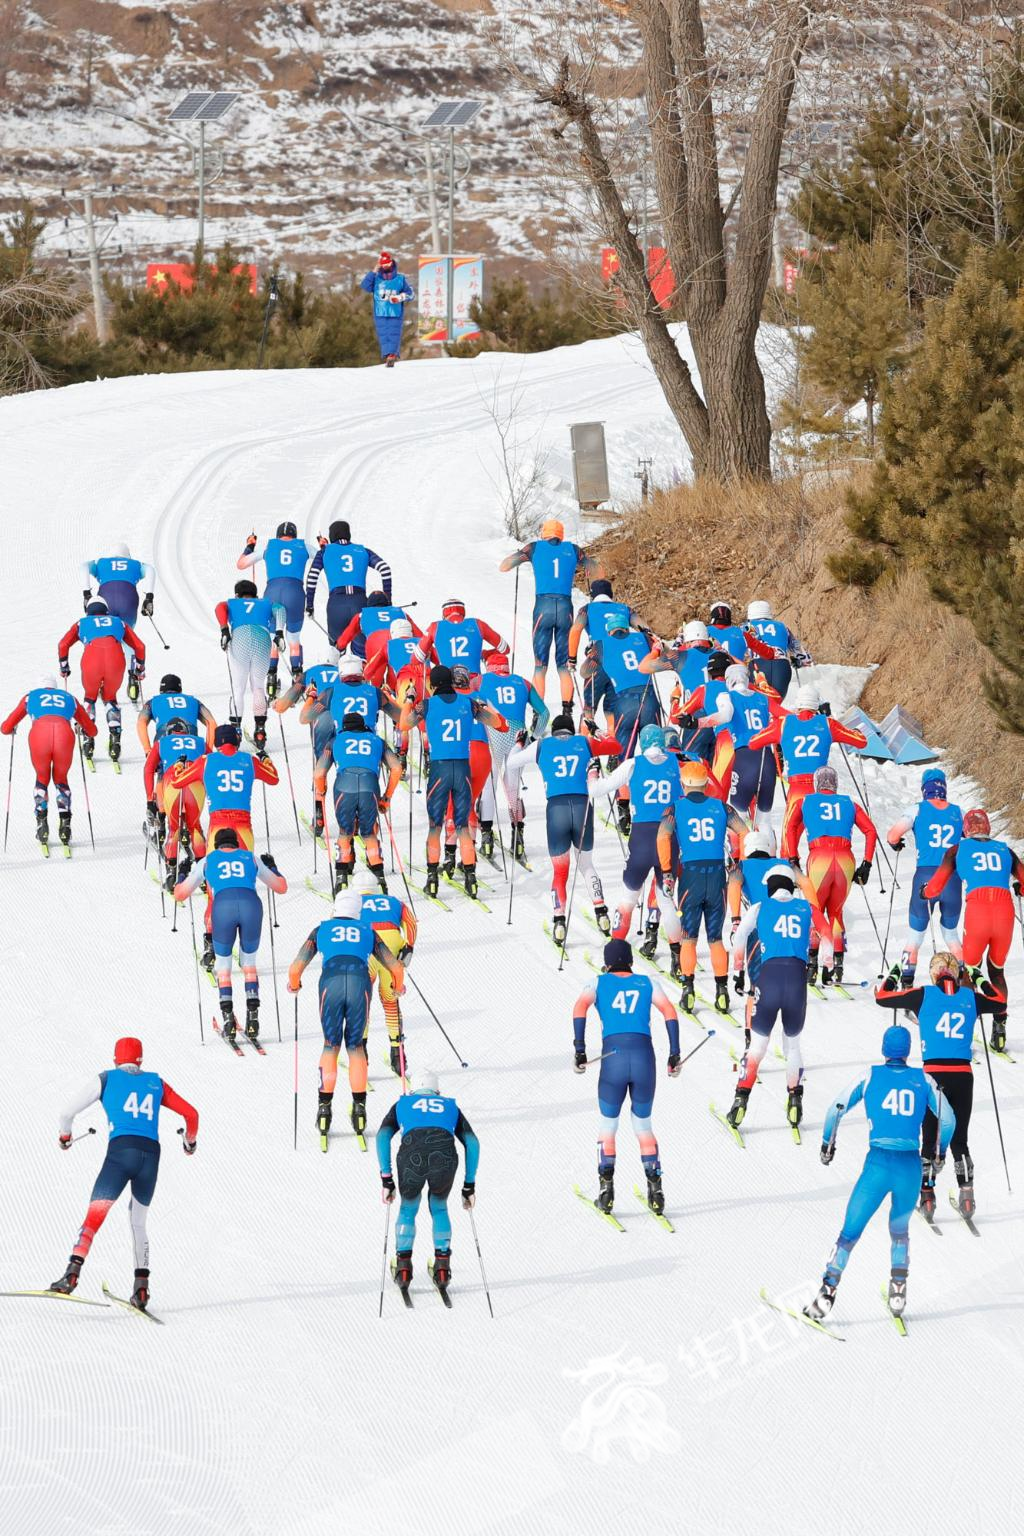 02——2月14日，越野滑雪公开组男子双追逐比赛集体出发，重庆运动员王强（1号号码布）冲在前列。华龙网记者 石涛 摄